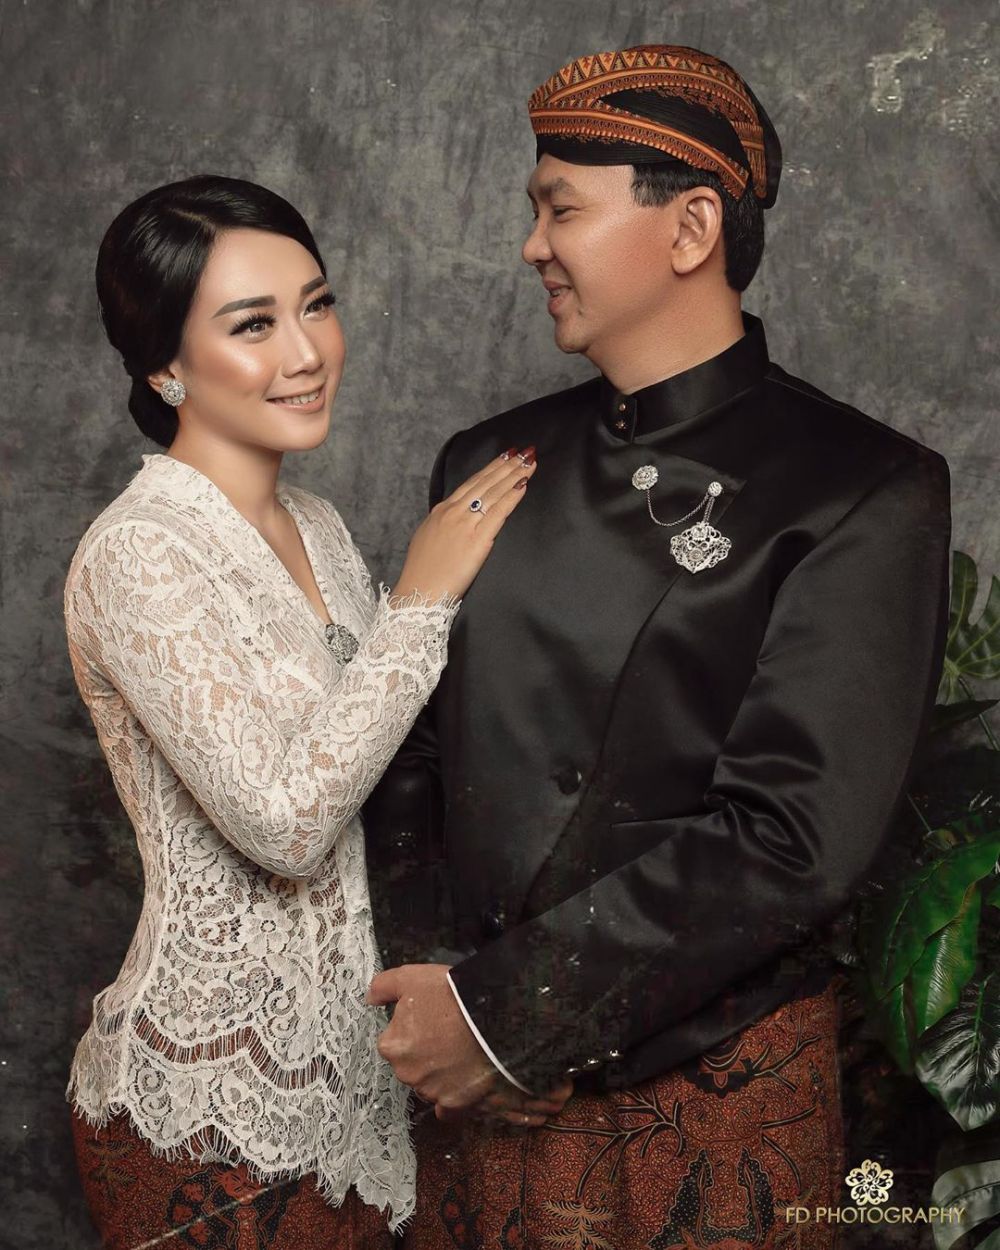 Foto pernikahan Ahok dan Puput Nastiti terungkap, jadi sorotan